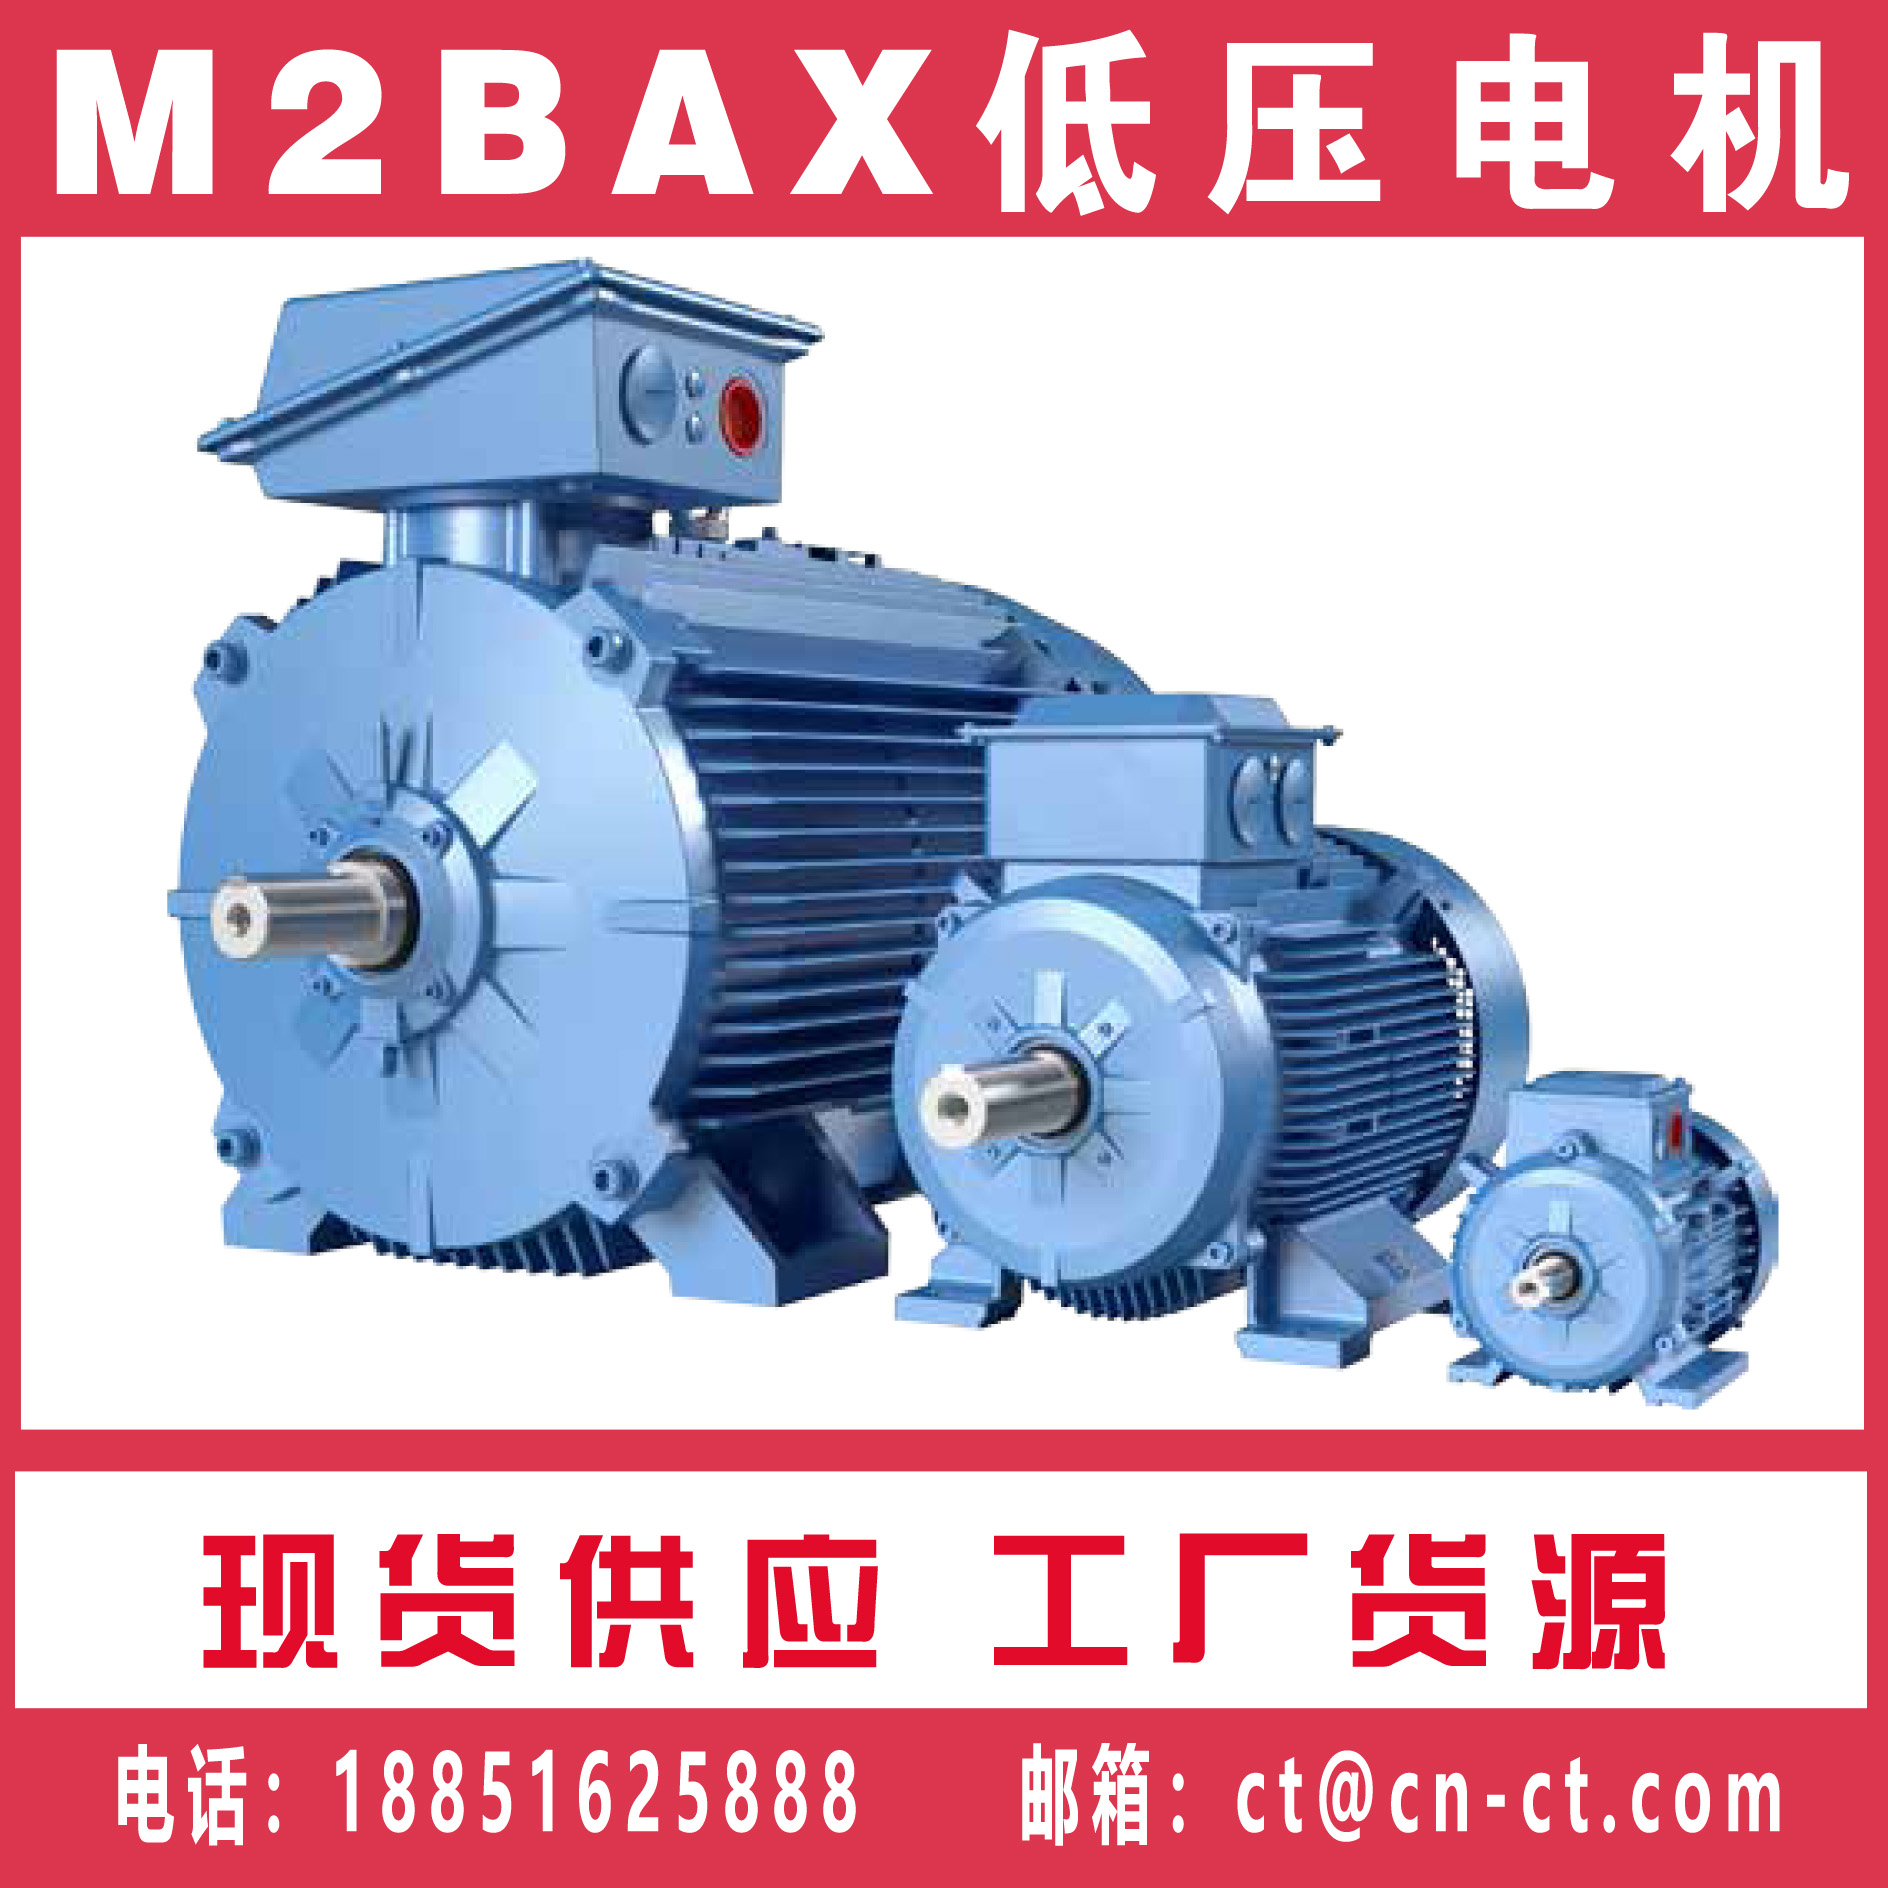 <strong>ABB普通电动机型号 M2BAX系列电机</strong>